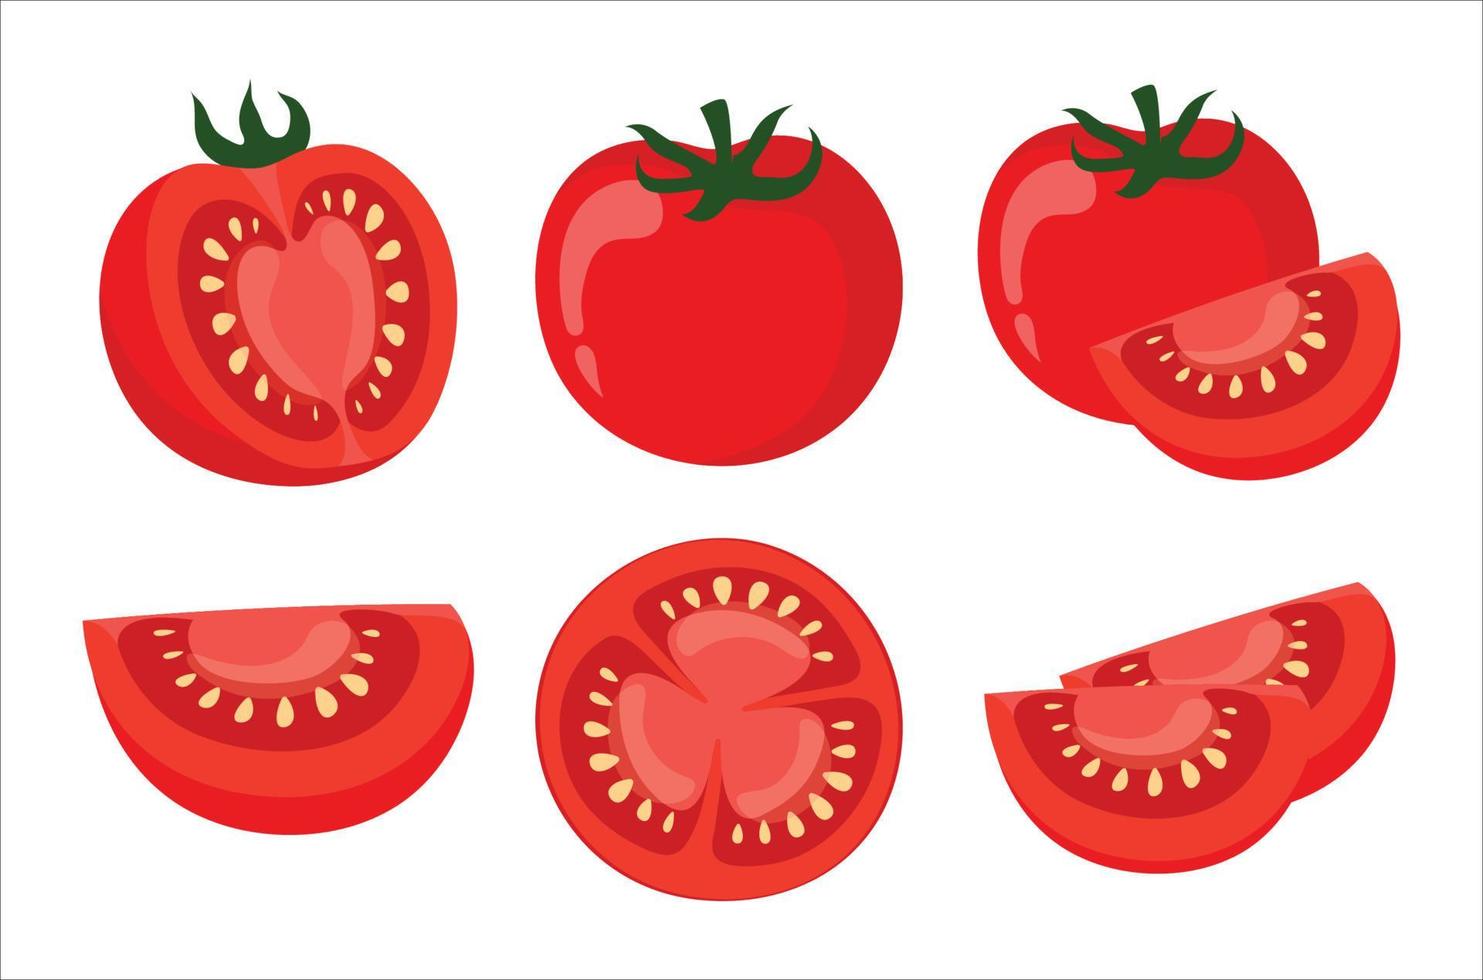 Tomato icon vector illustrations. Fresh and ripe tomato set. Half a tomato, a slice of tomato, whole tomato icon set. Vector illustration